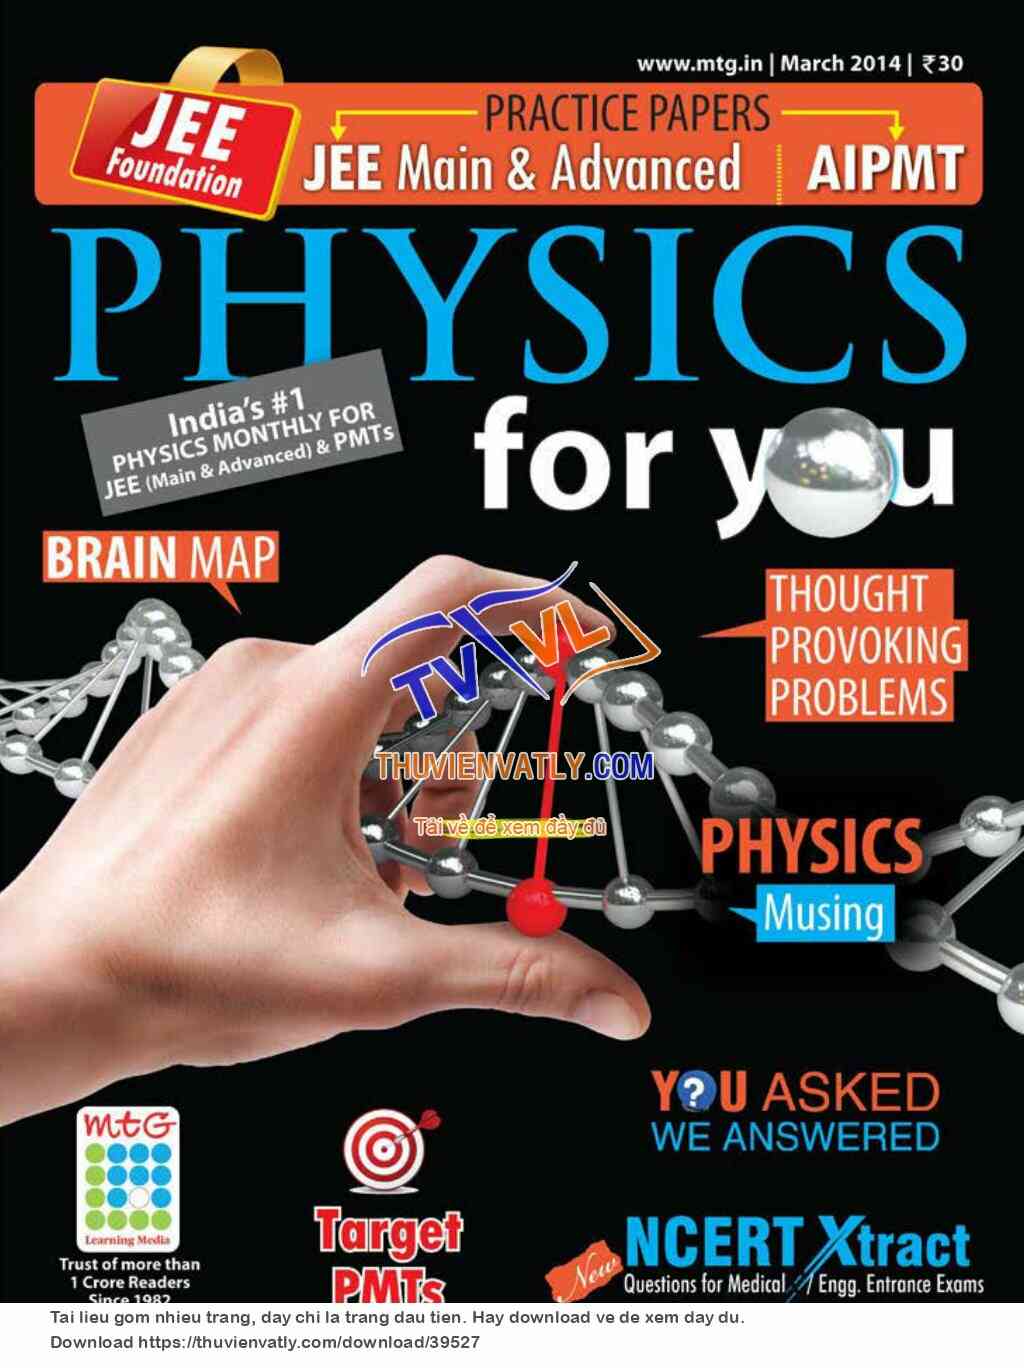 Tạp chí Physics For You, số tháng 3/2014